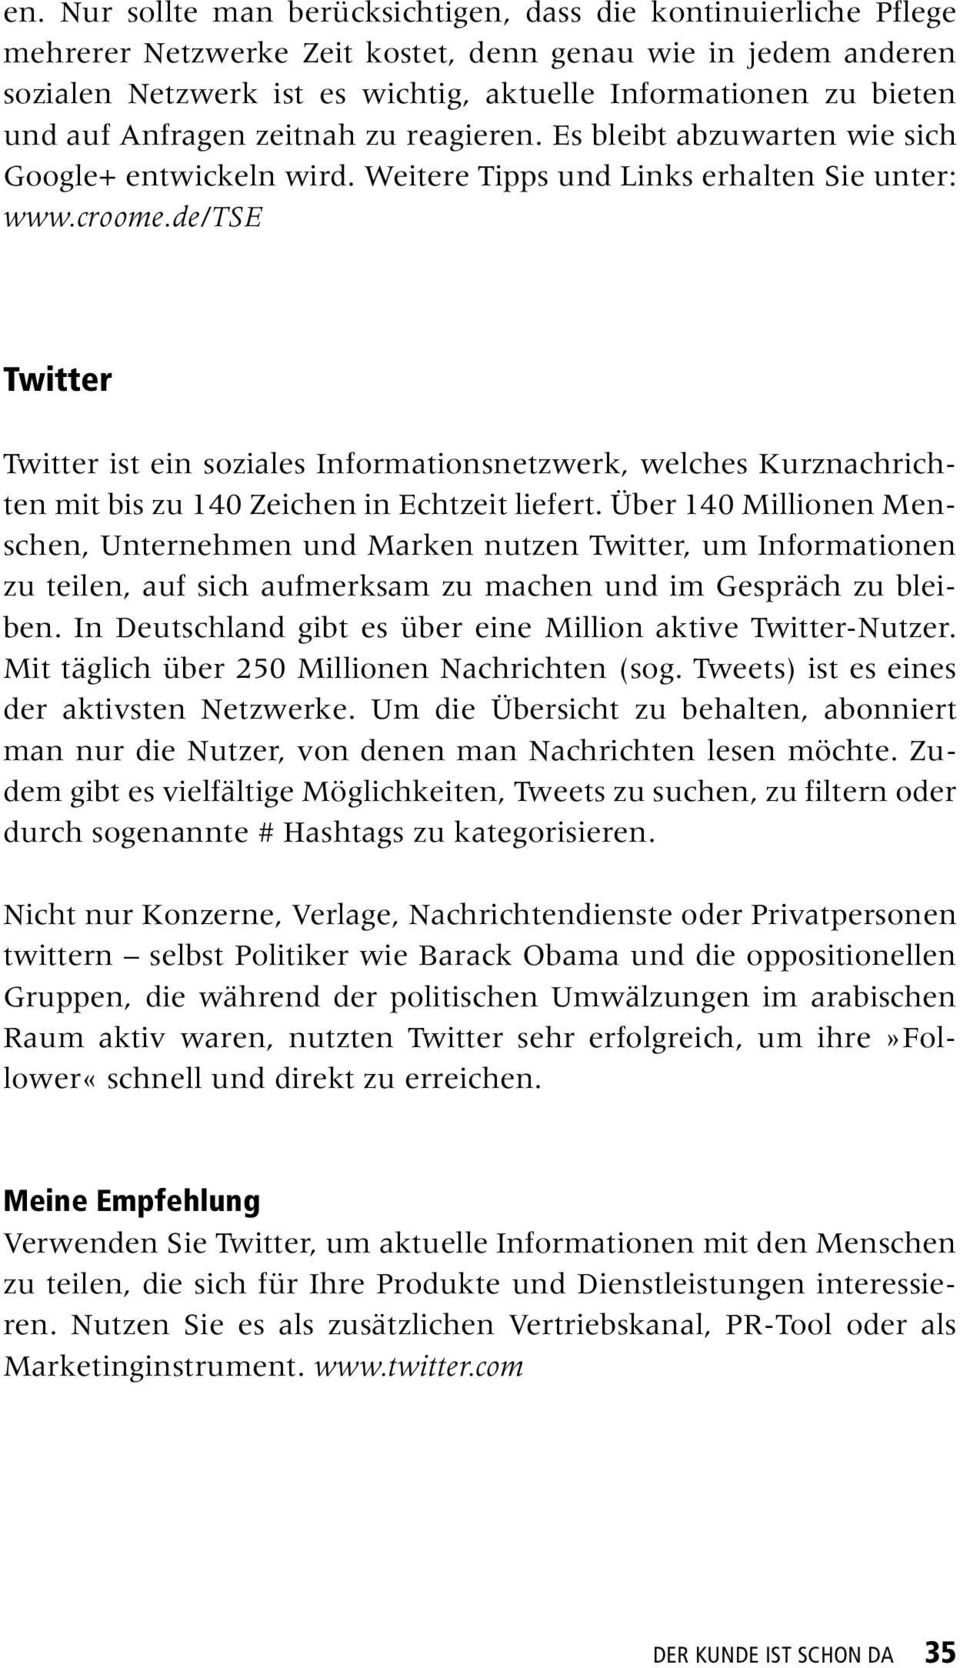 de/tse Twitter Twitter ist ein soziales Informationsnetzwerk, welches Kurznachrichten mit bis zu 140 Zeichen in Echtzeit liefert.